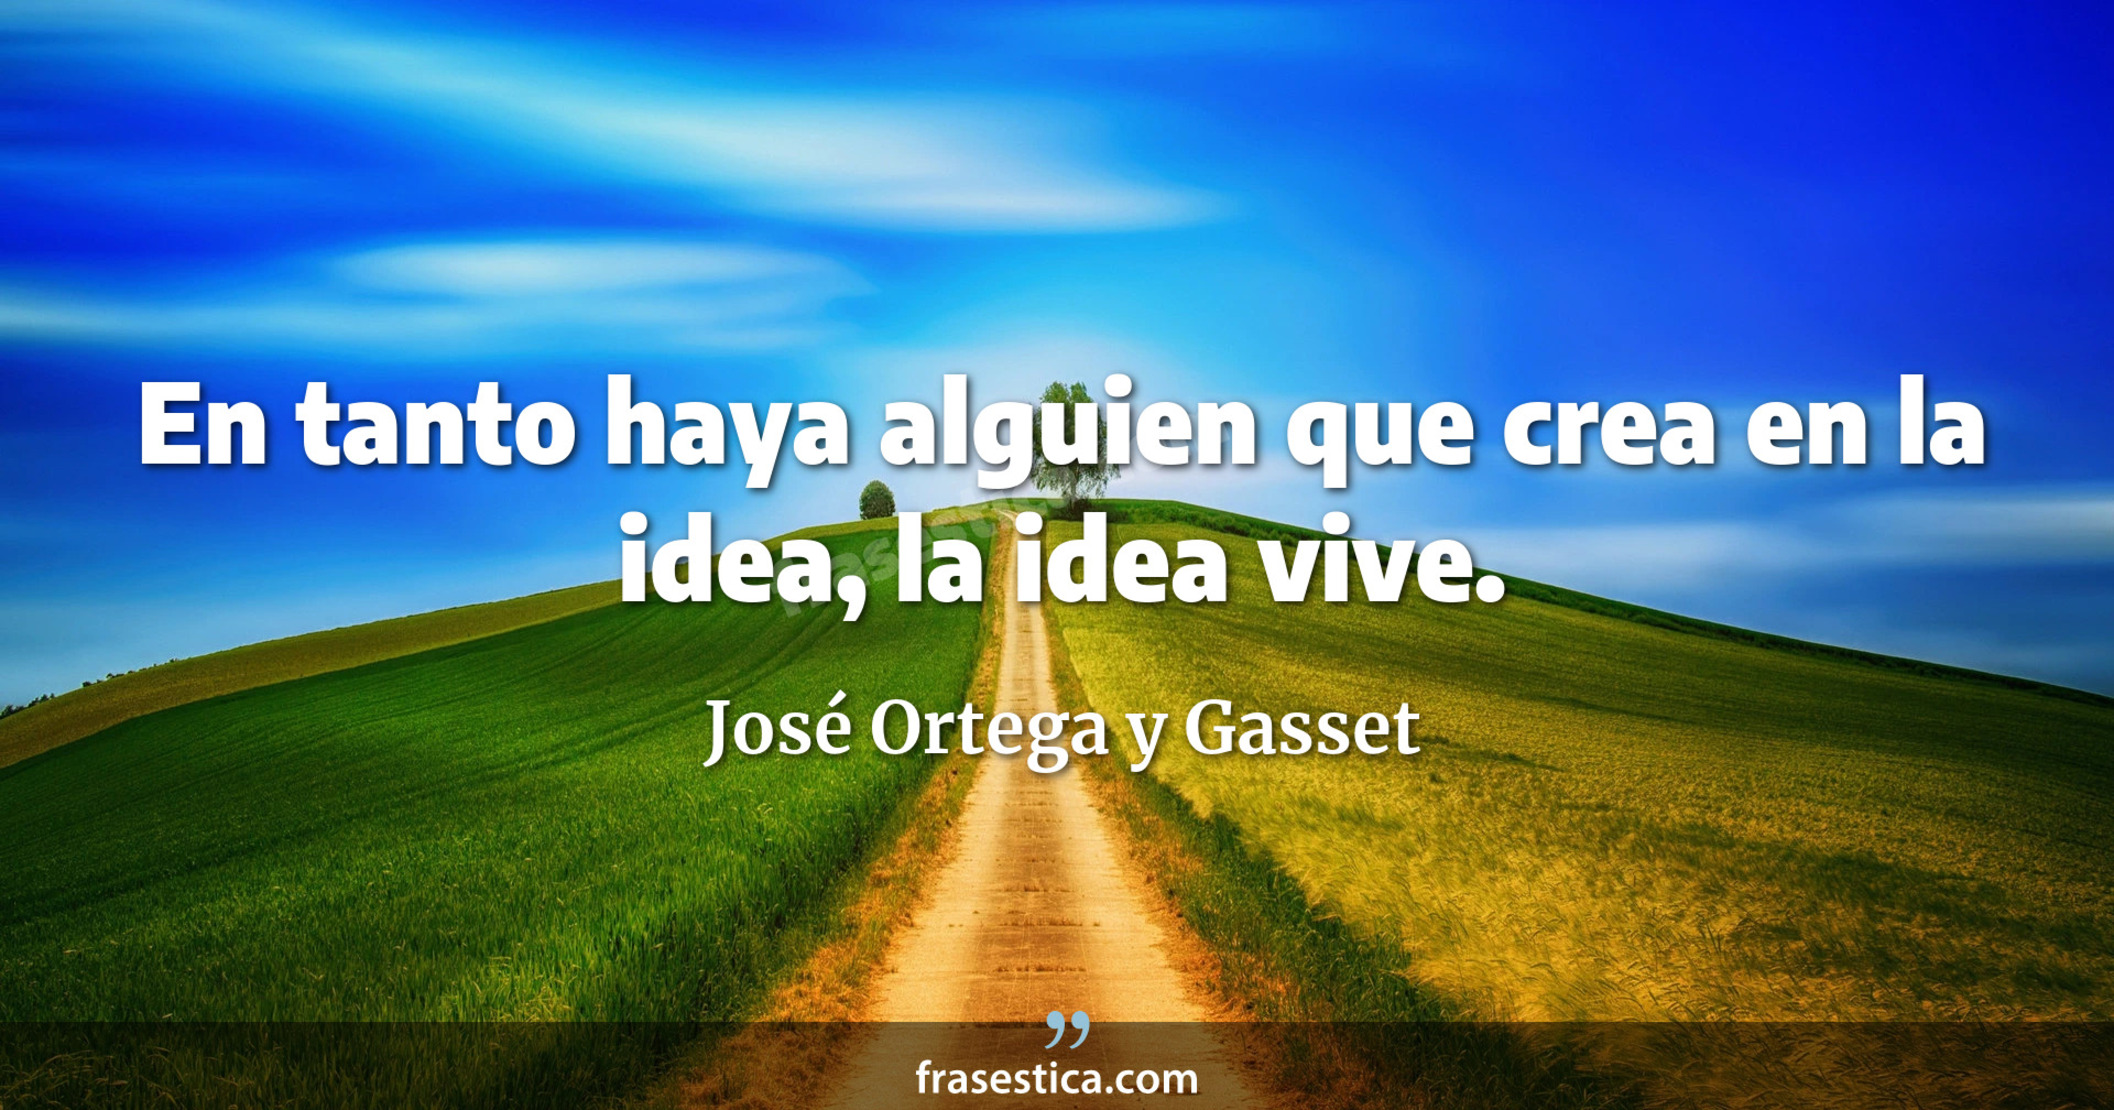 En tanto haya alguien que crea en la idea, la idea vive. - José Ortega y Gasset